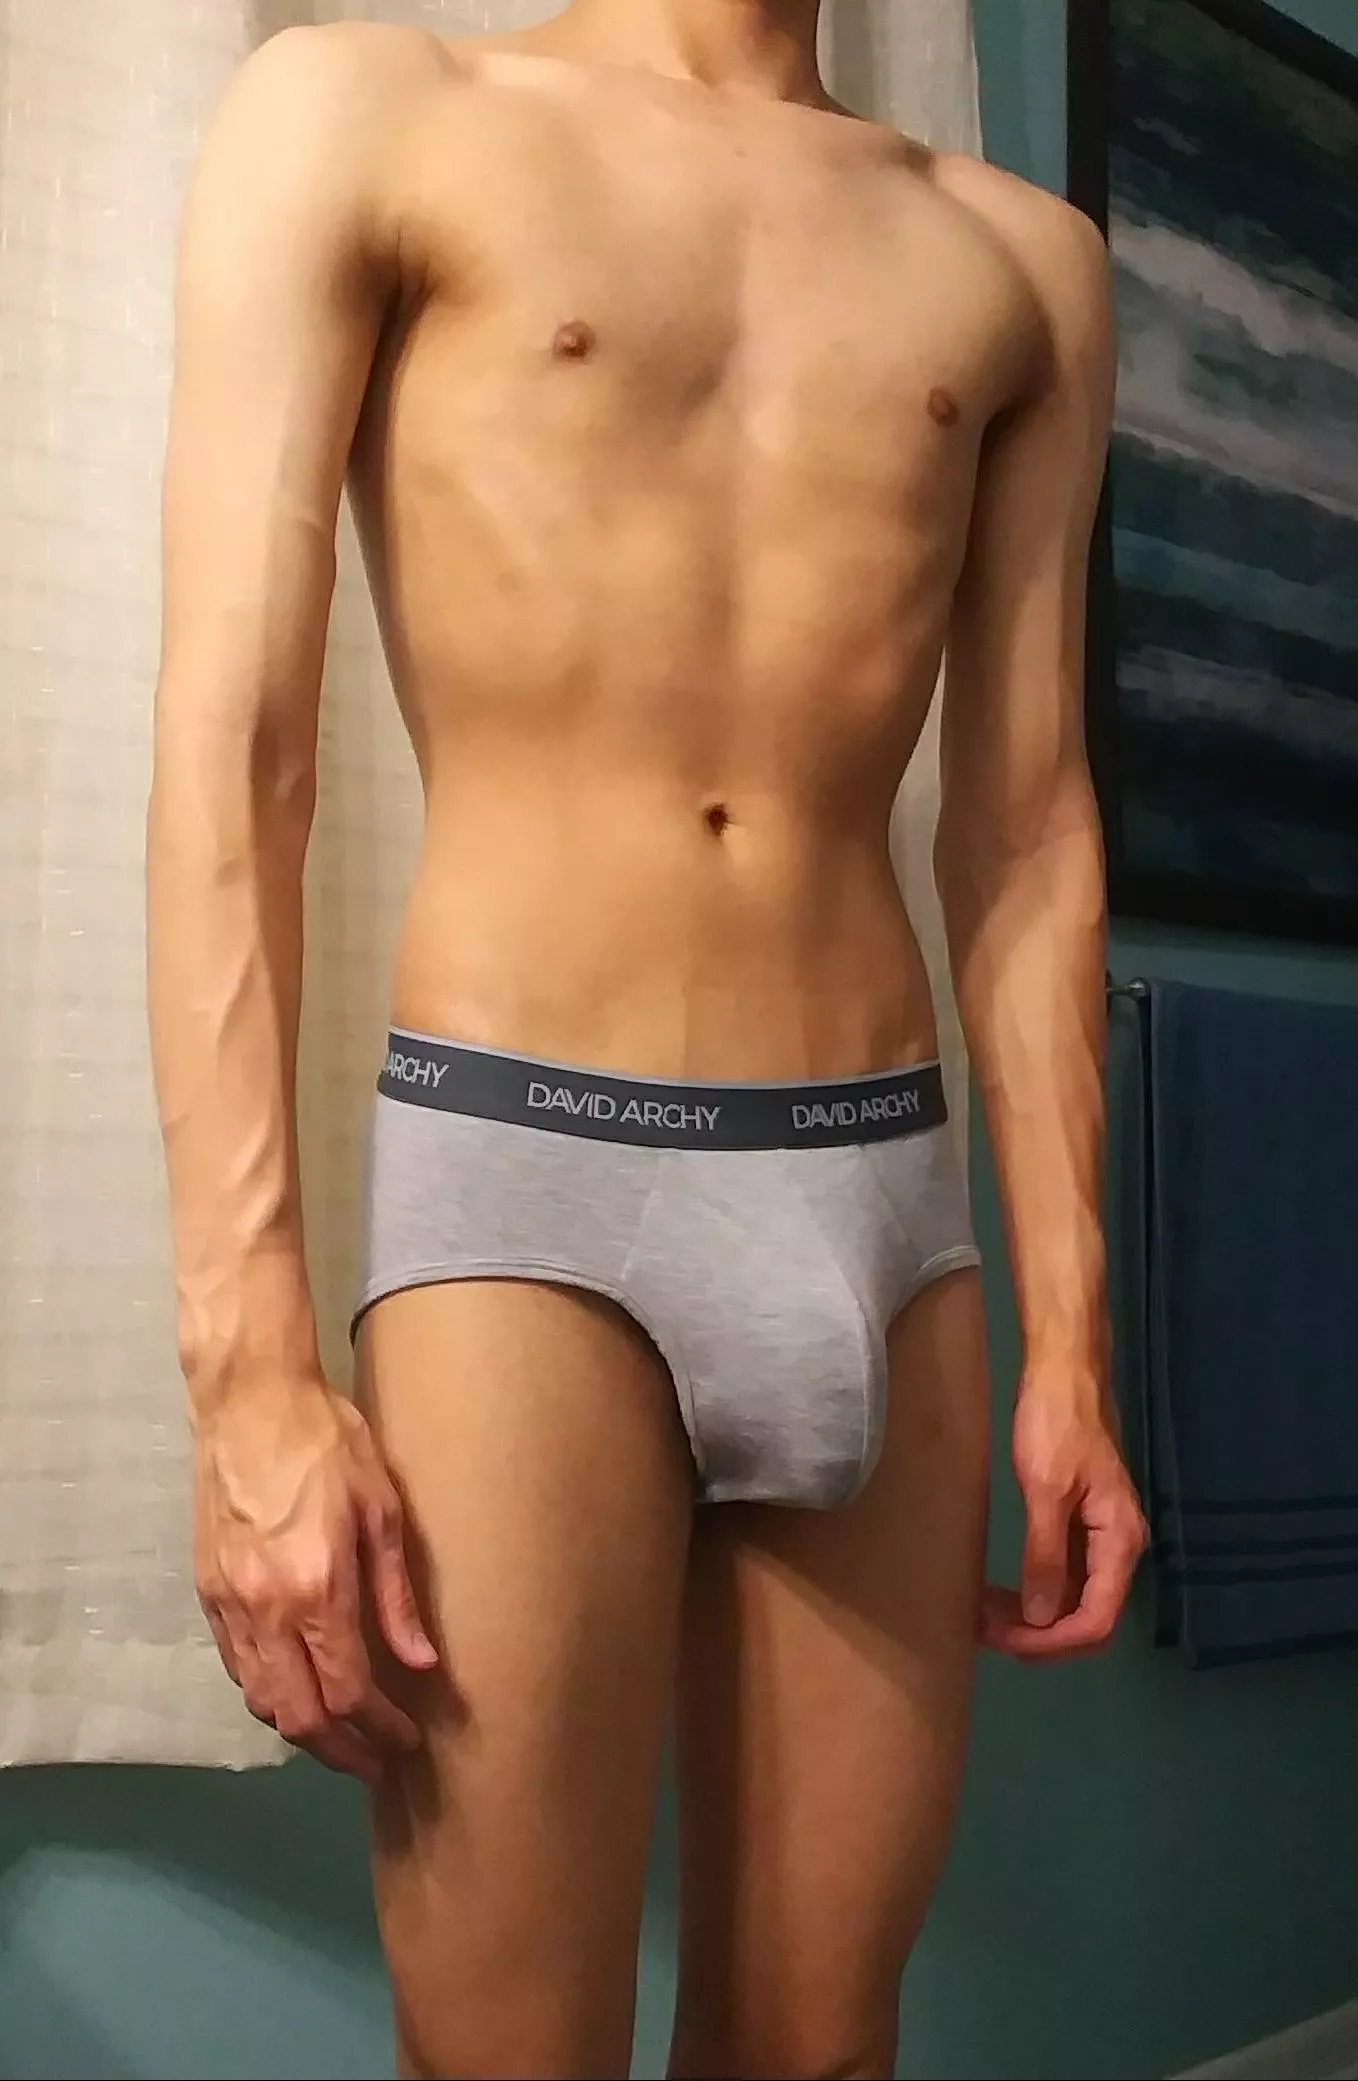 ag mitchell share skinny teen boy porn photos